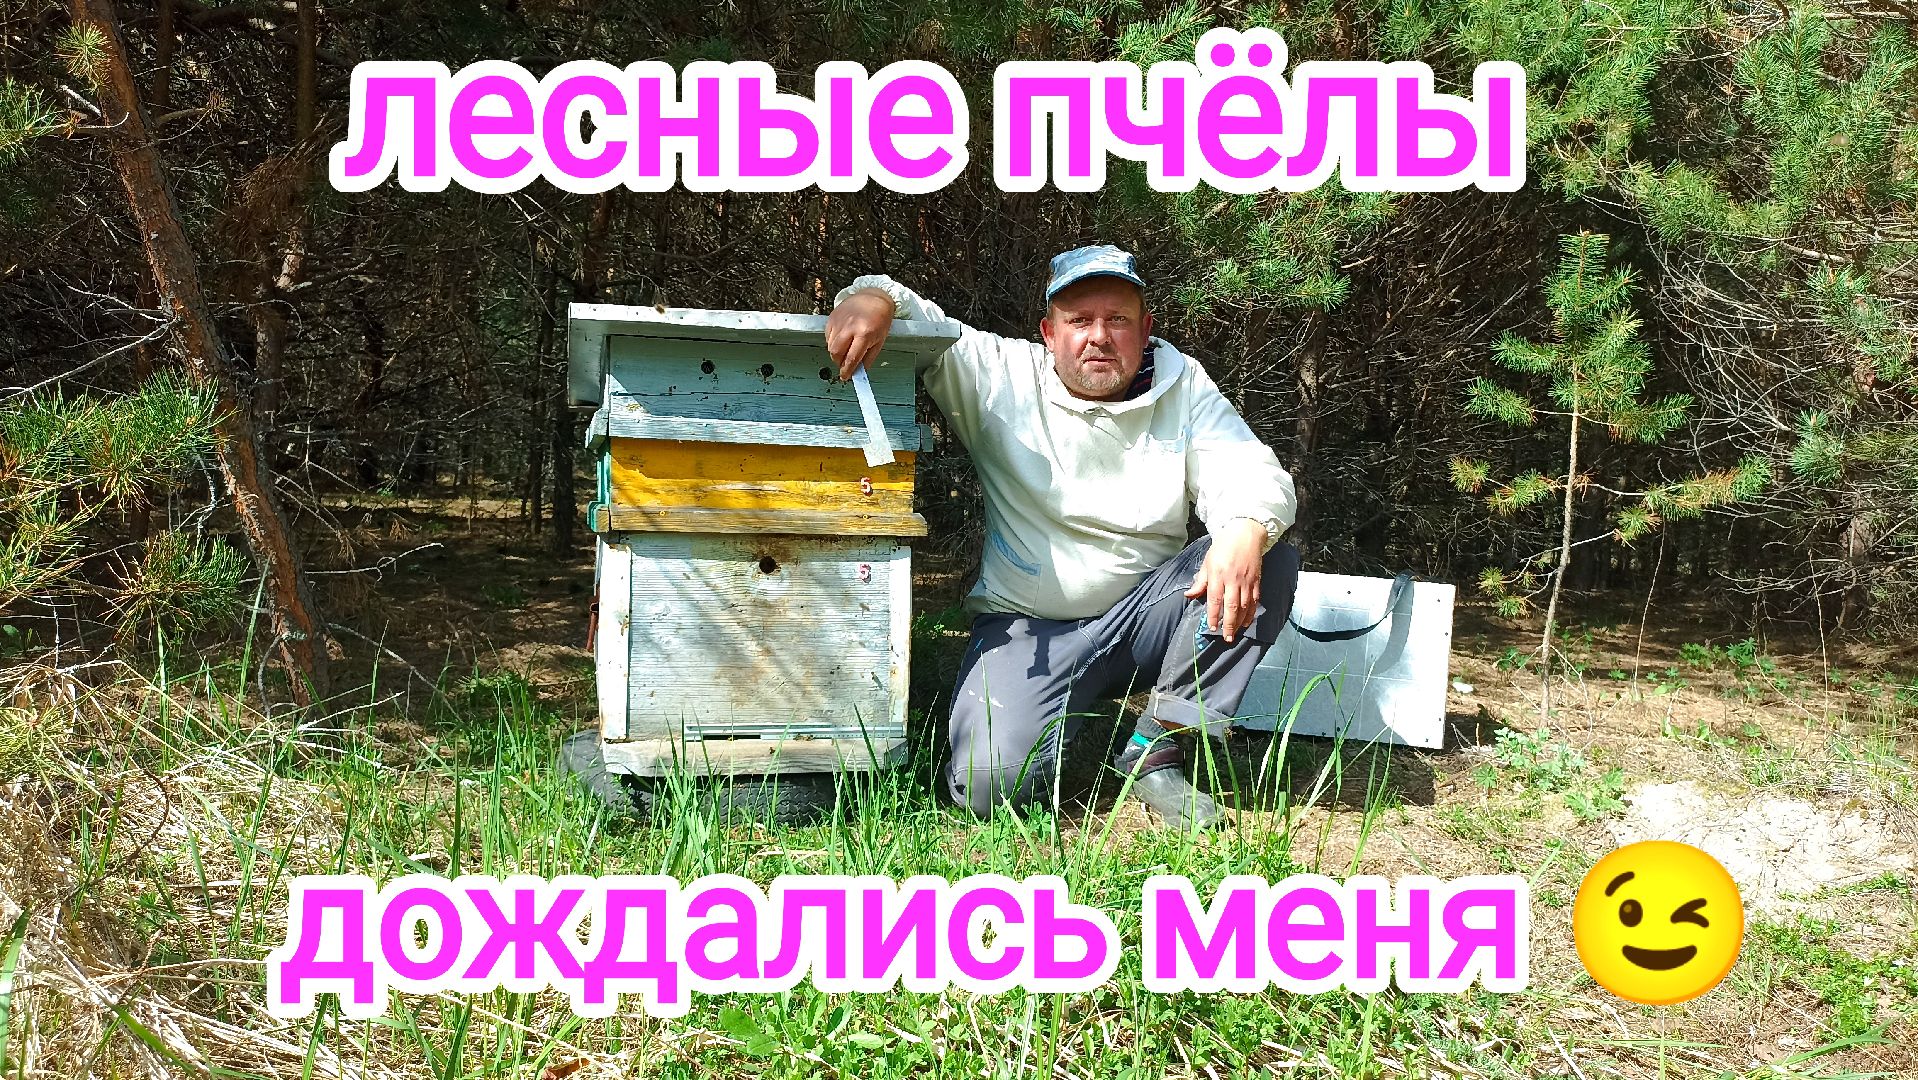 Улей в лесу! Пчёлы выжили и хотят работать! ПЧЕЛОВОДСТВО!